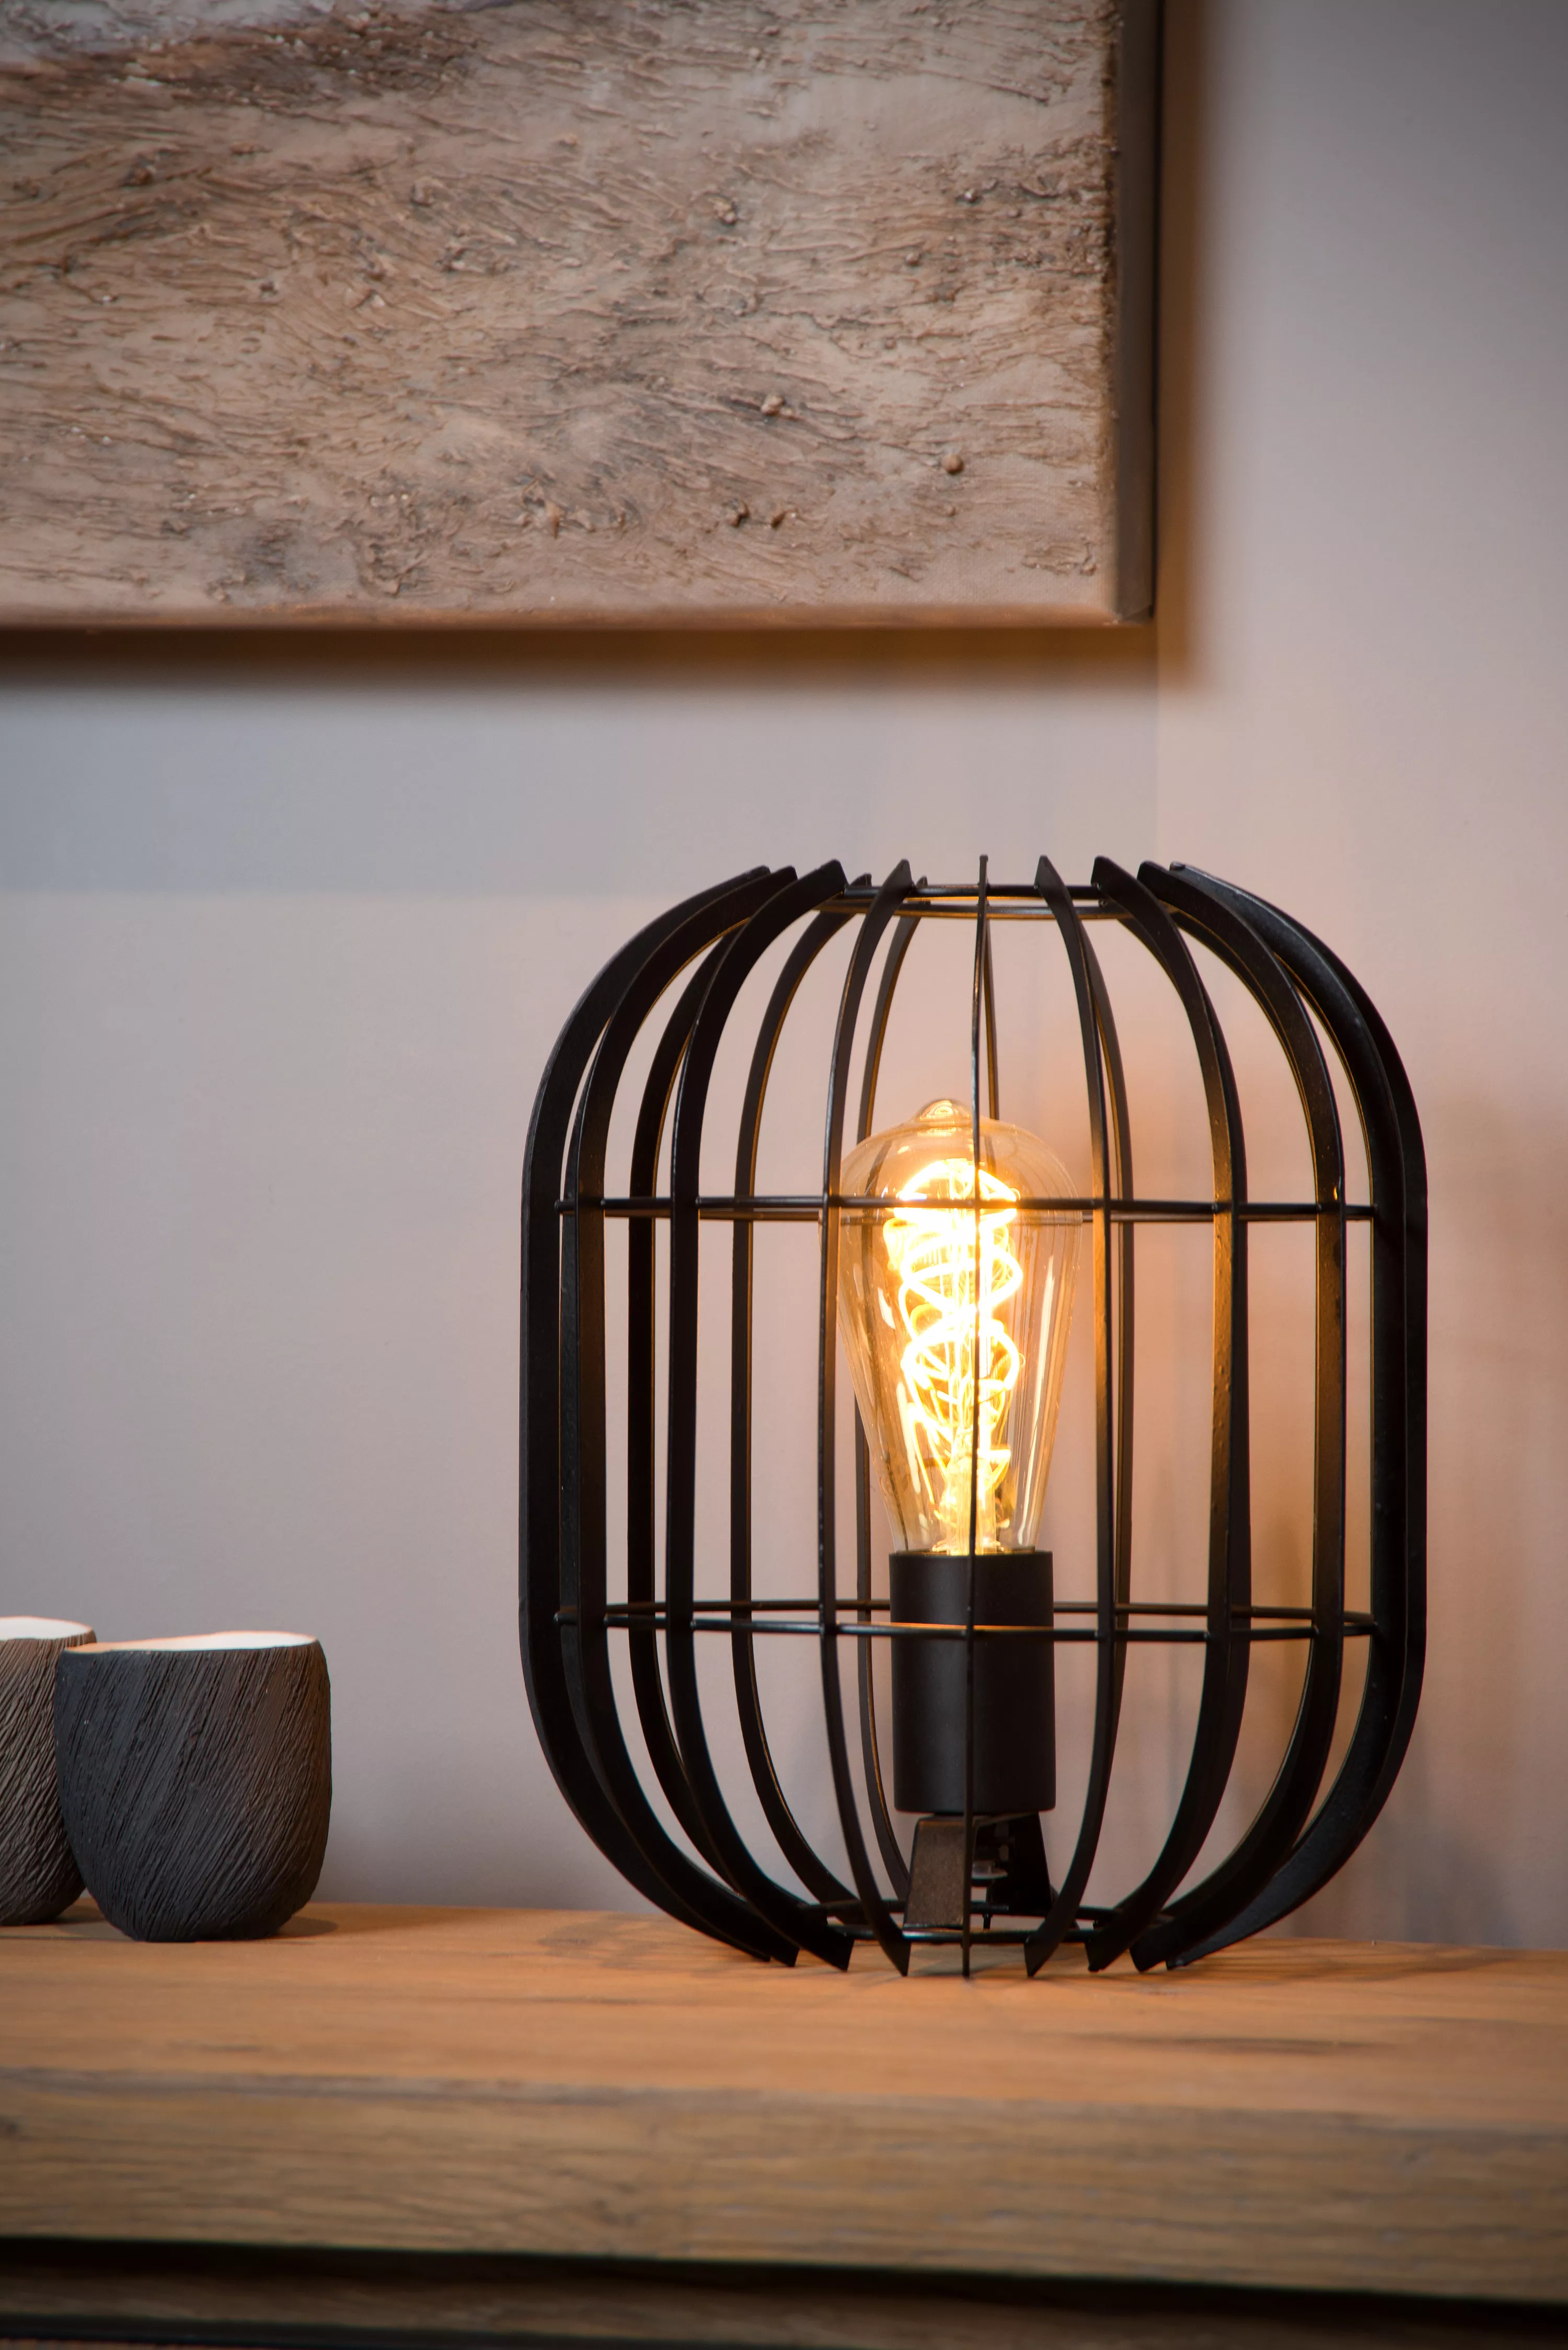 Jednoduchá kovová stolní lampička Reda se hodí do moderního interiéru a na zdech tvoří příjemnou hru světel.